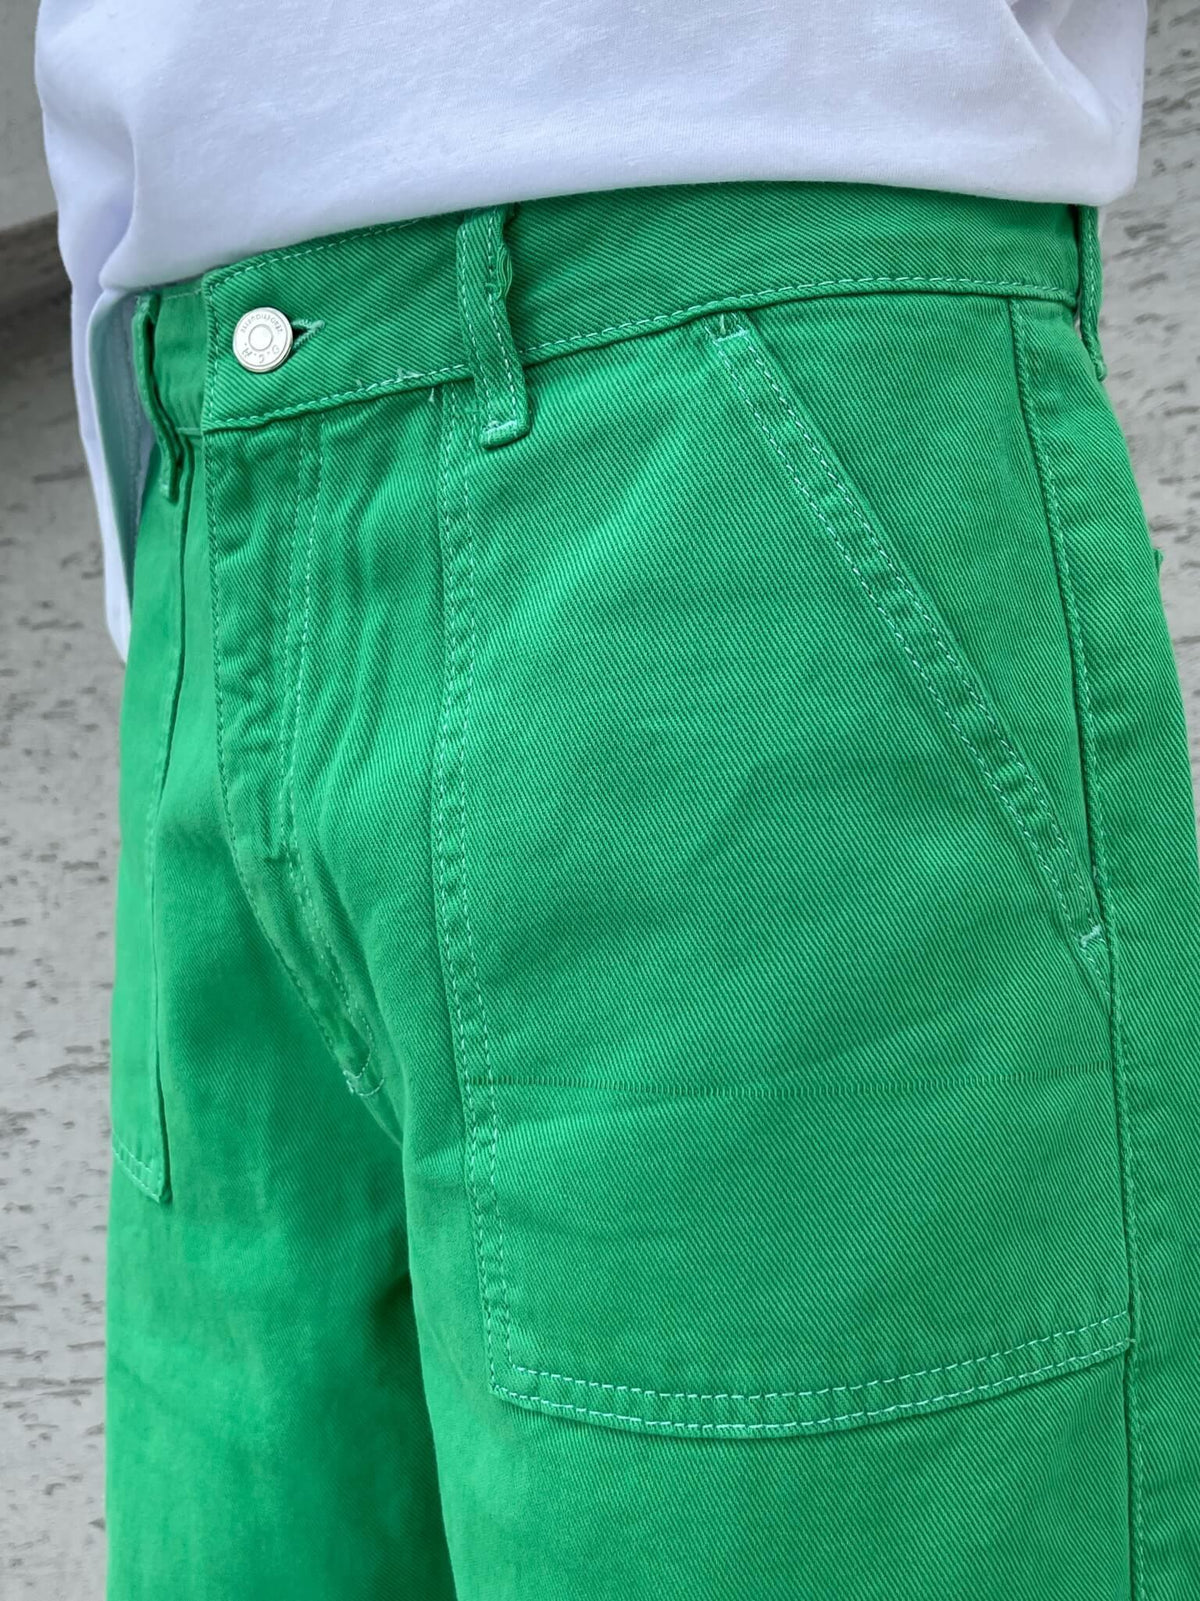 Men's Premium Baggy Cargo Pants Green - STREET MODE ™